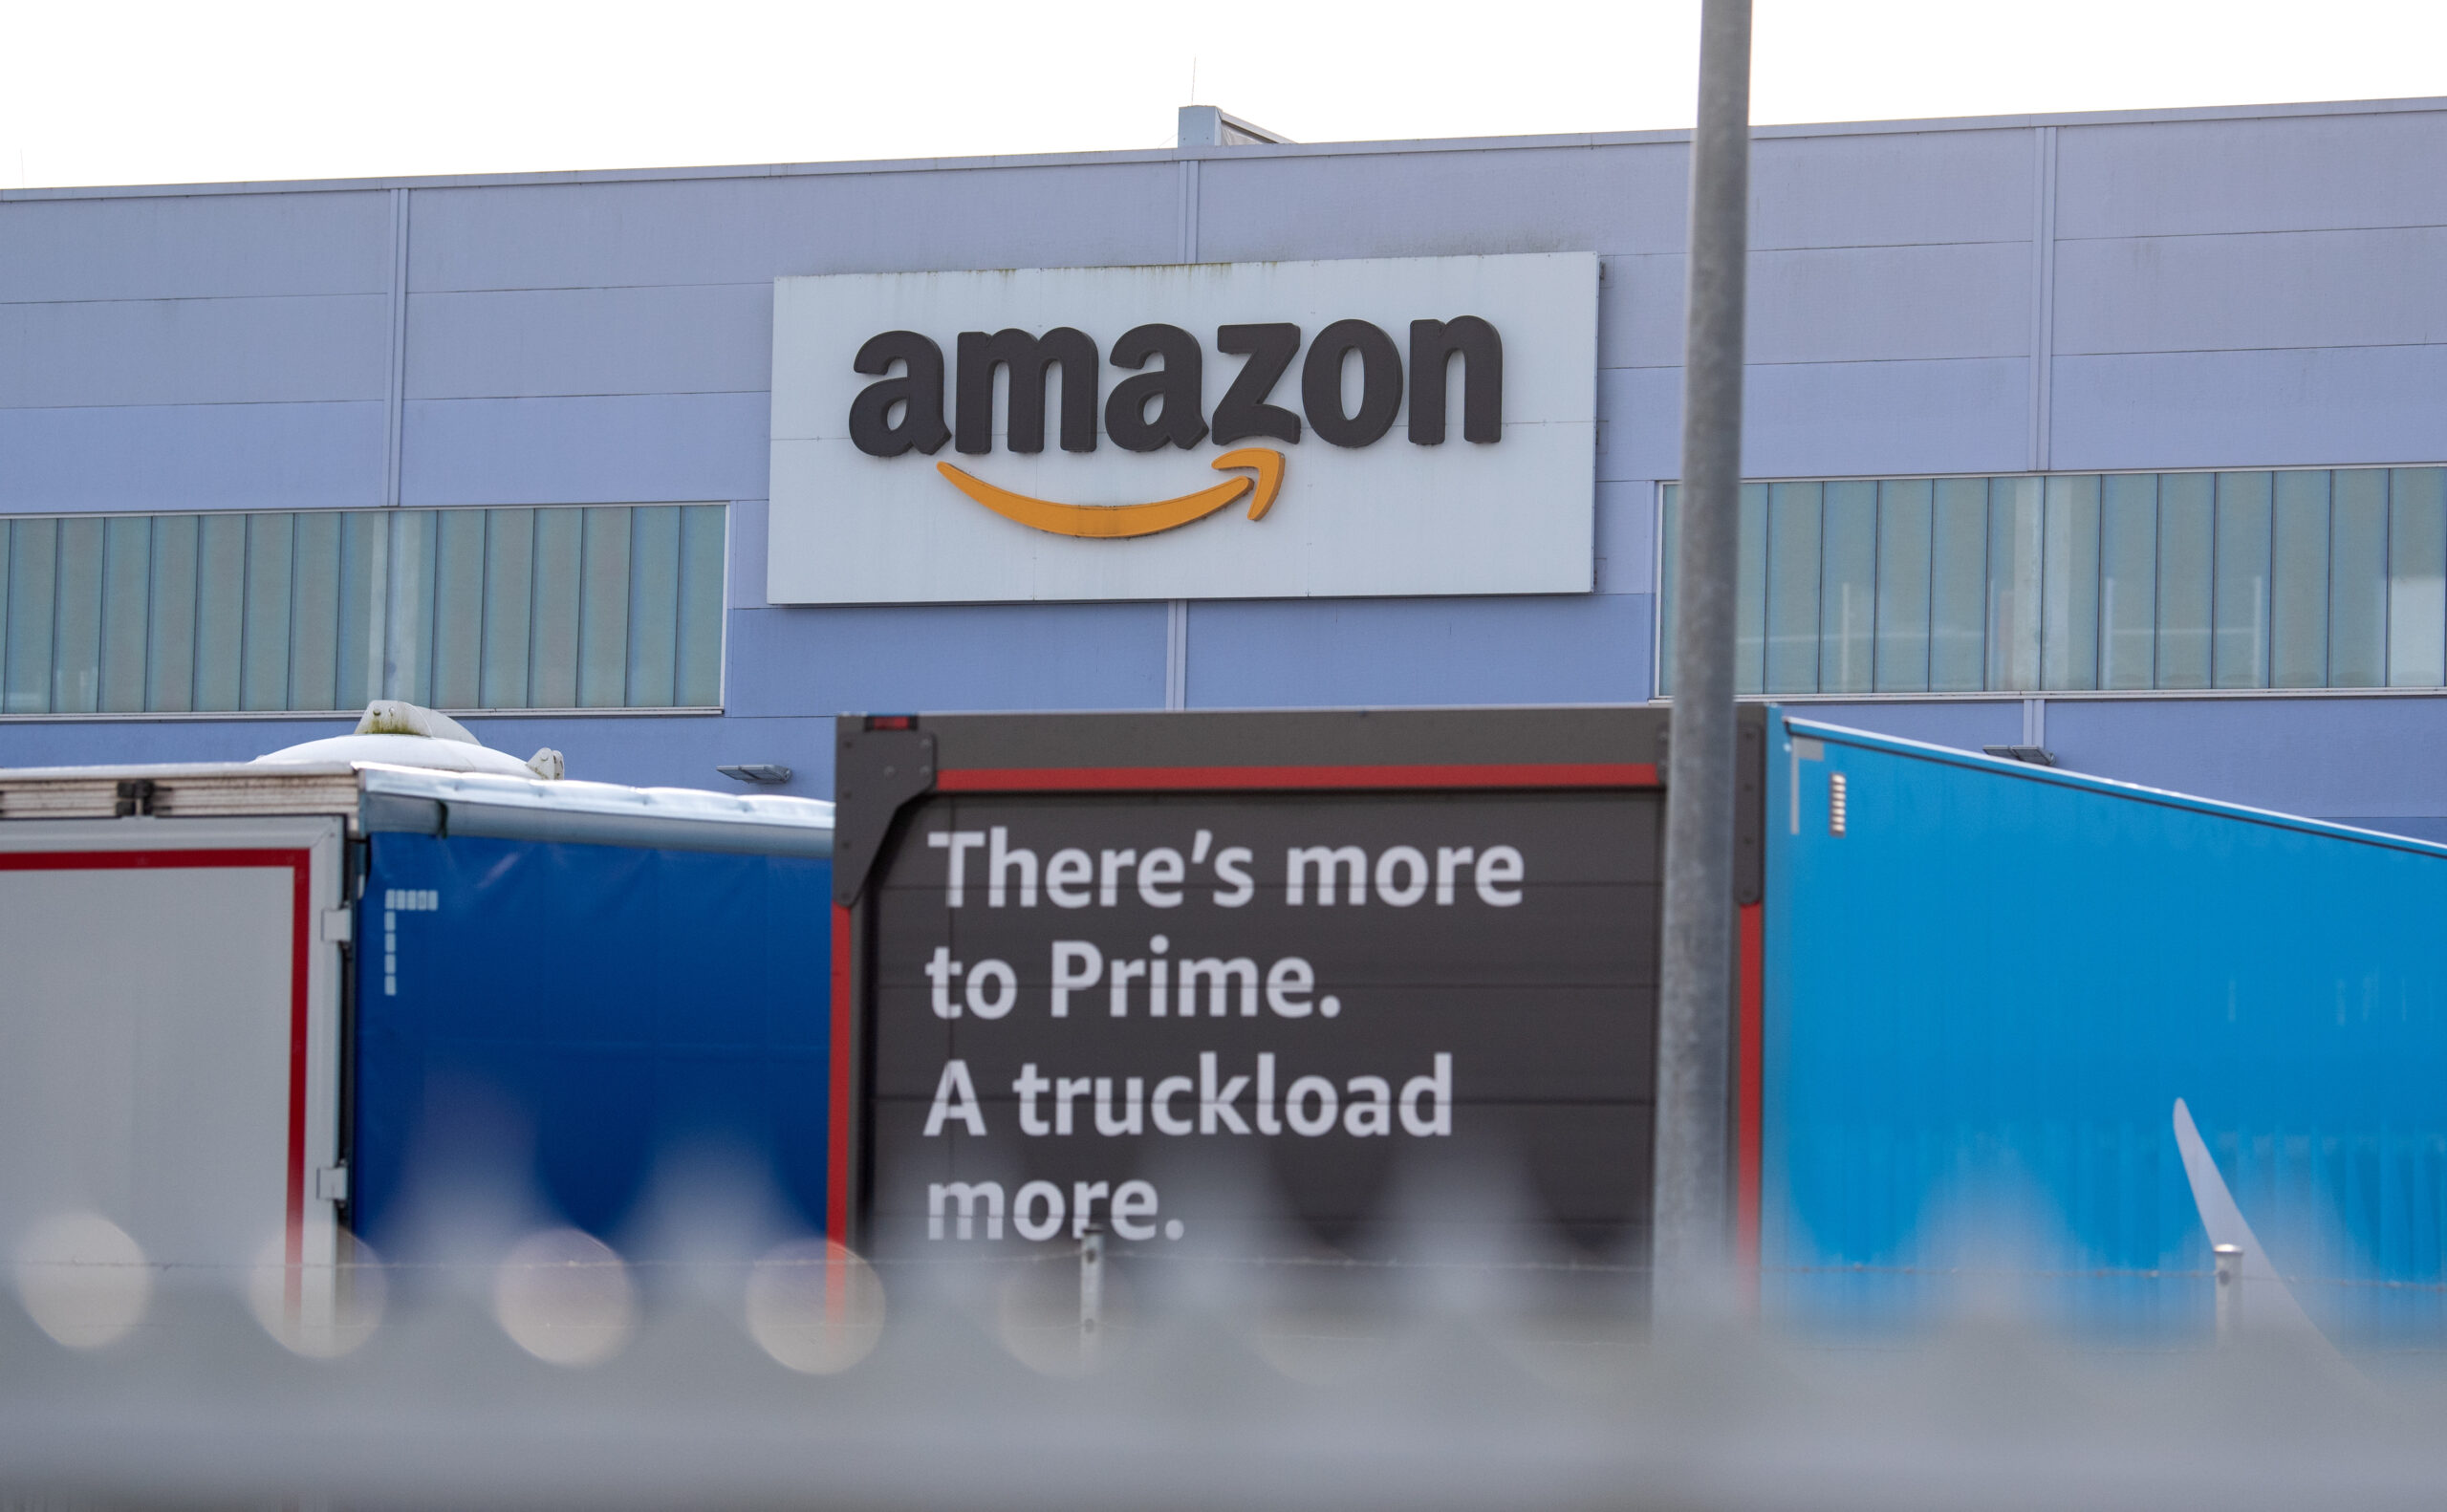 Amazon in Winsen von außen